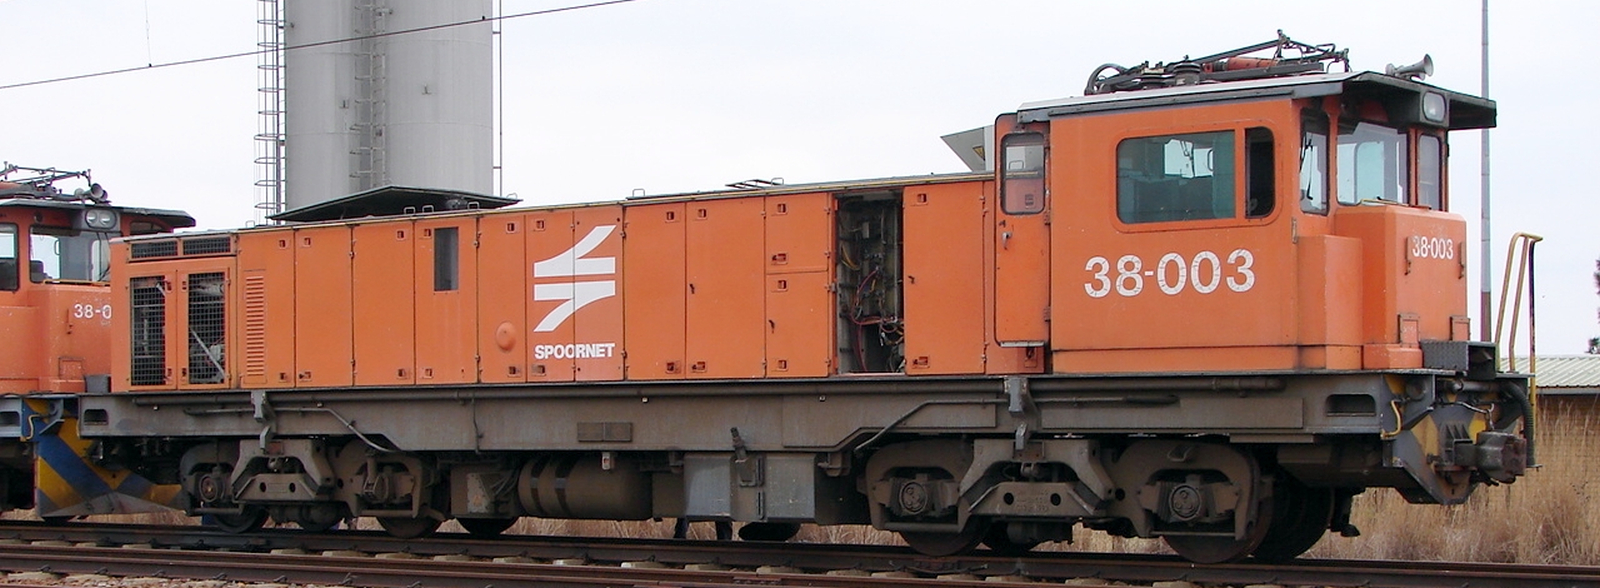 38-003 in September 2009 at Sentrarand marshalling yard, Gauteng